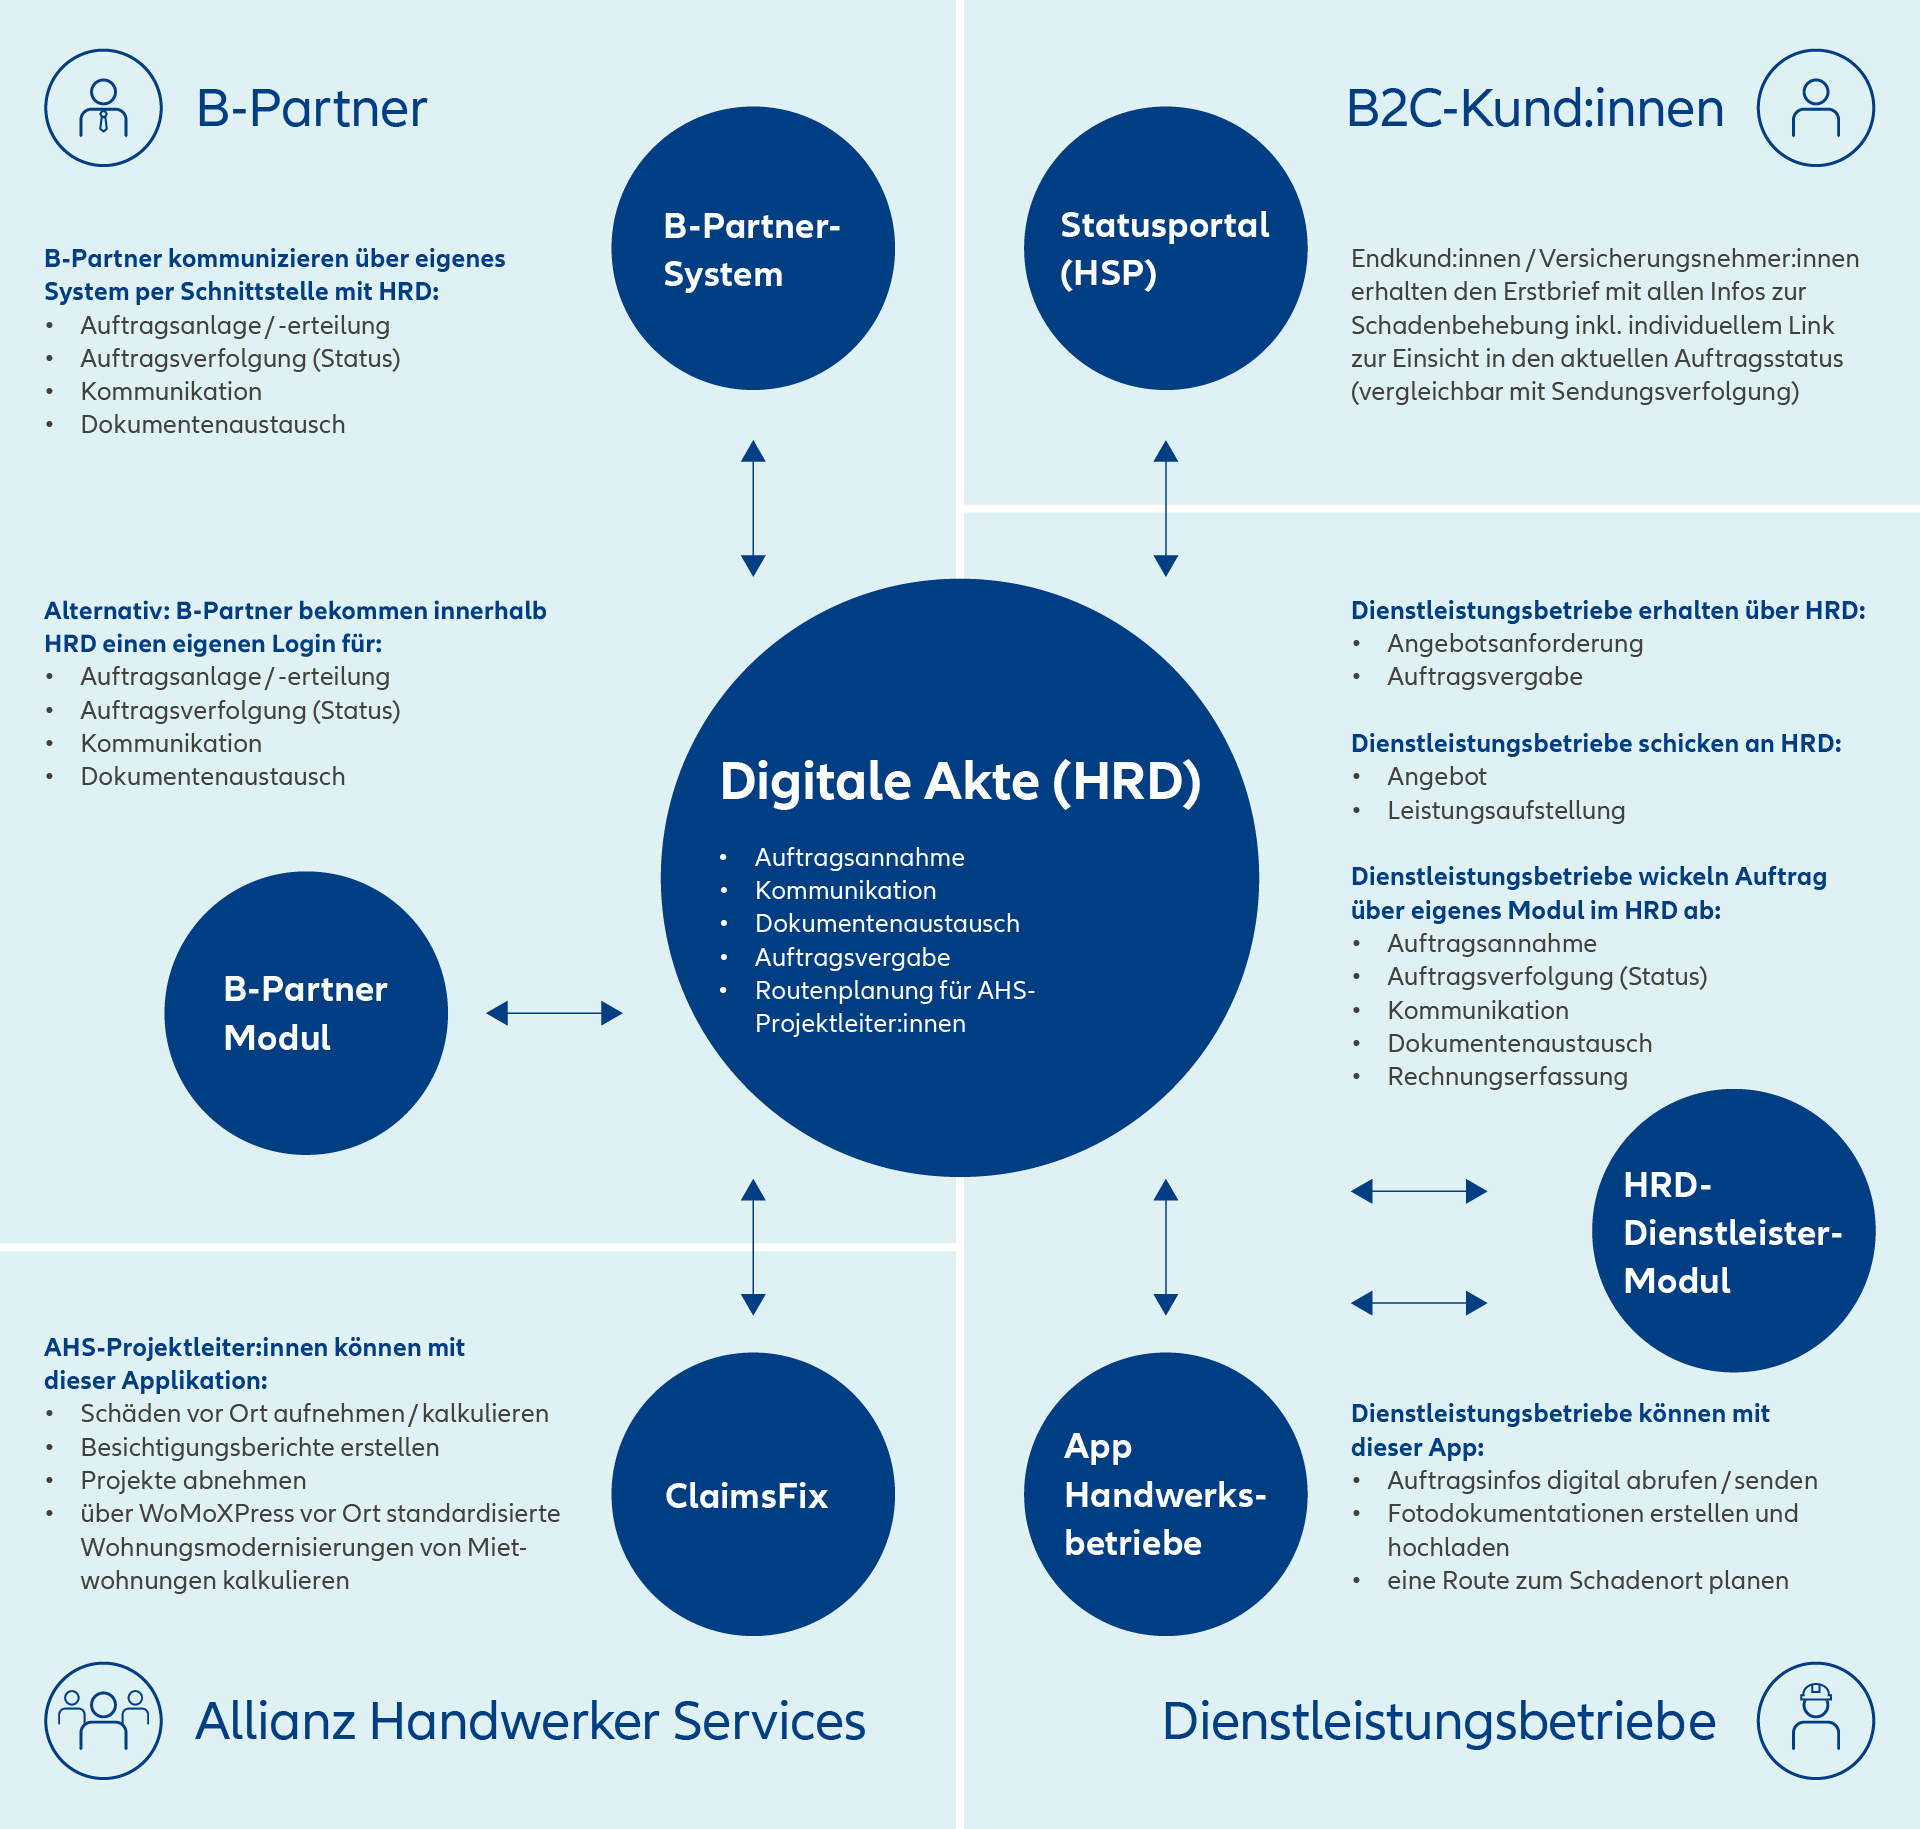 Infografik: Allianz Handwerker Services - Digitale Akte zu HRD